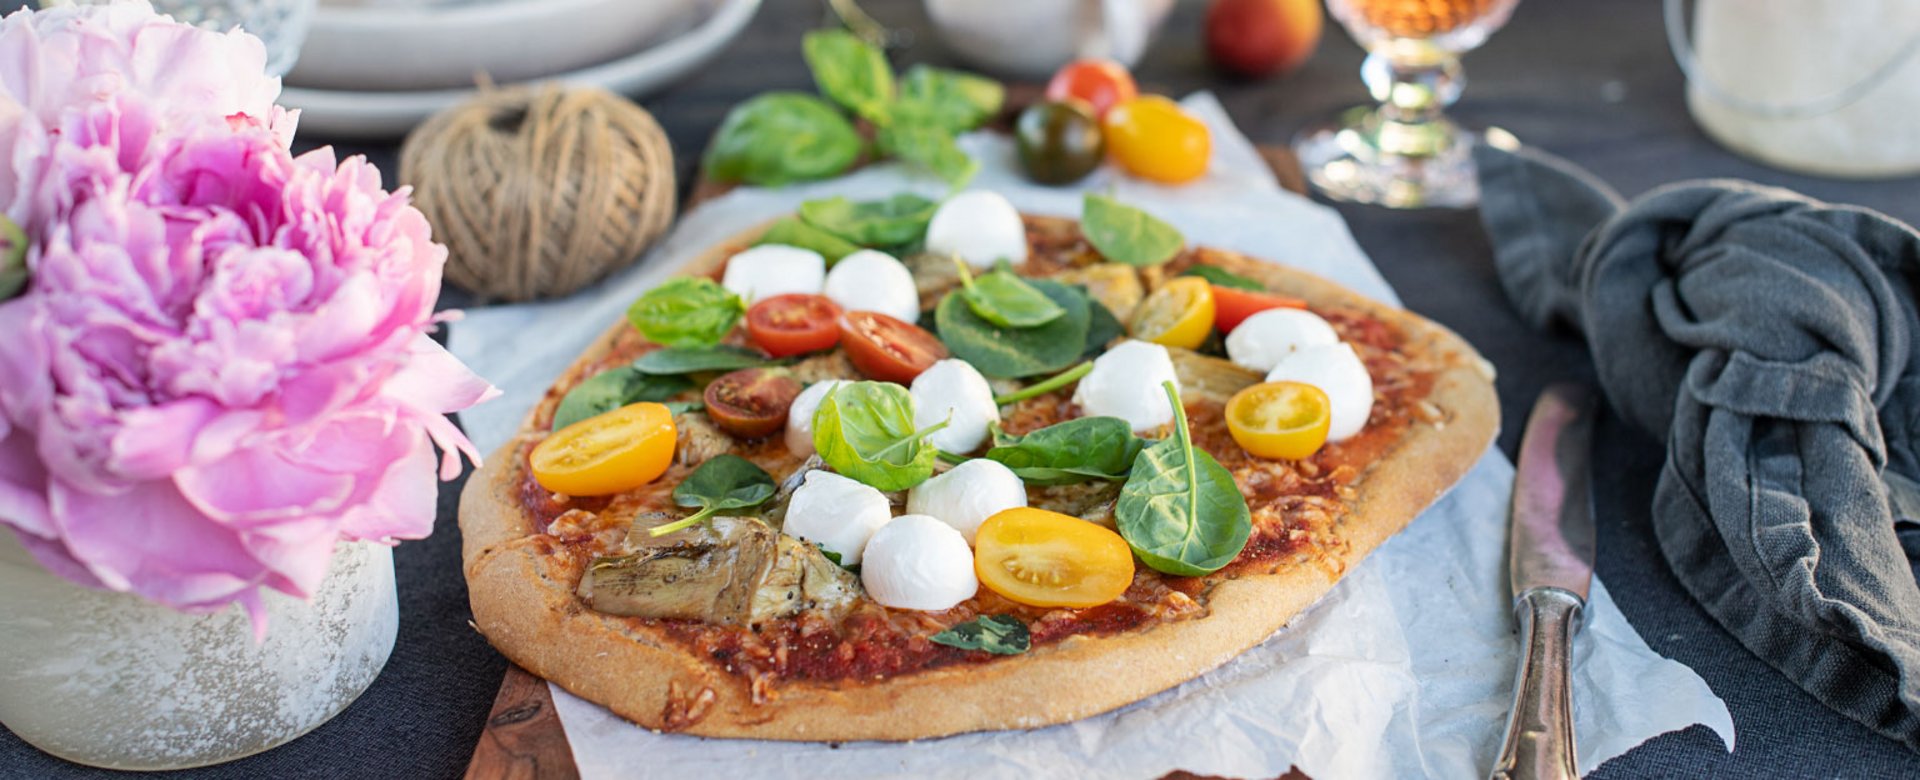 Urgetreide-Pizza mit Spinat, Artischocken & Mozzarella